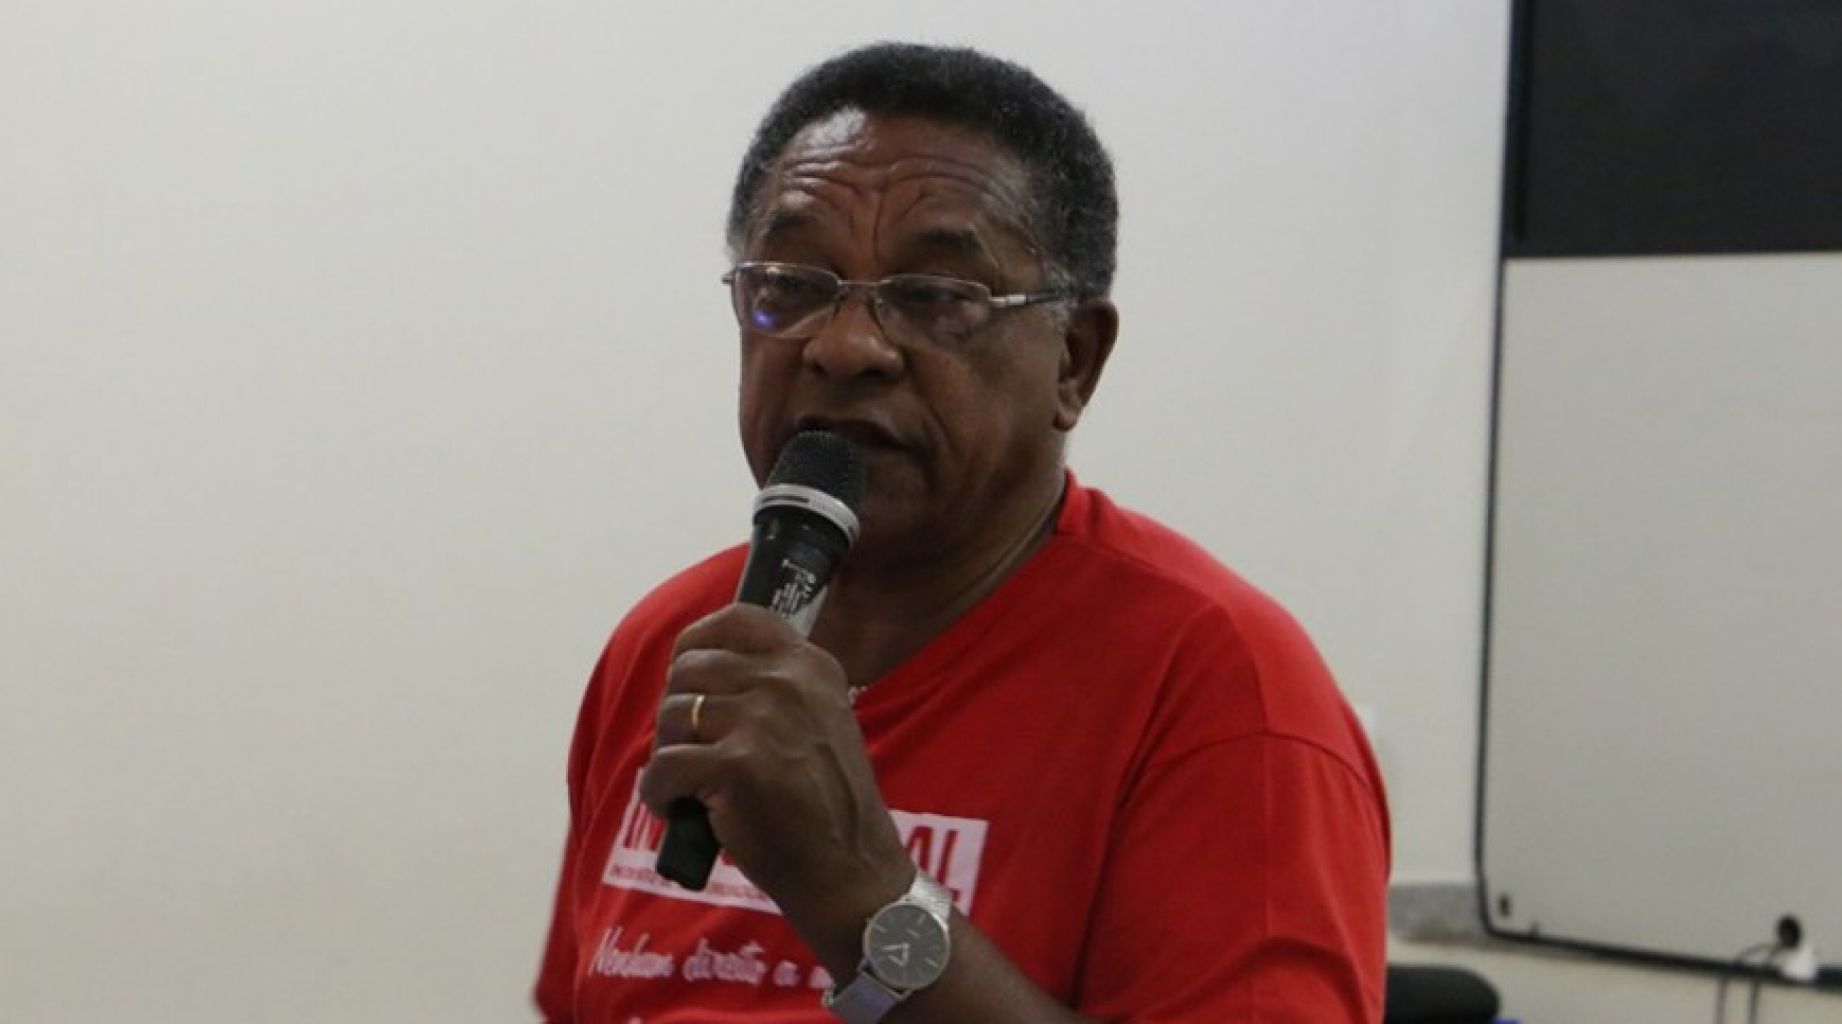 Admap expressa pesar pelo falecimento do sindicalista Eliezer Mariano